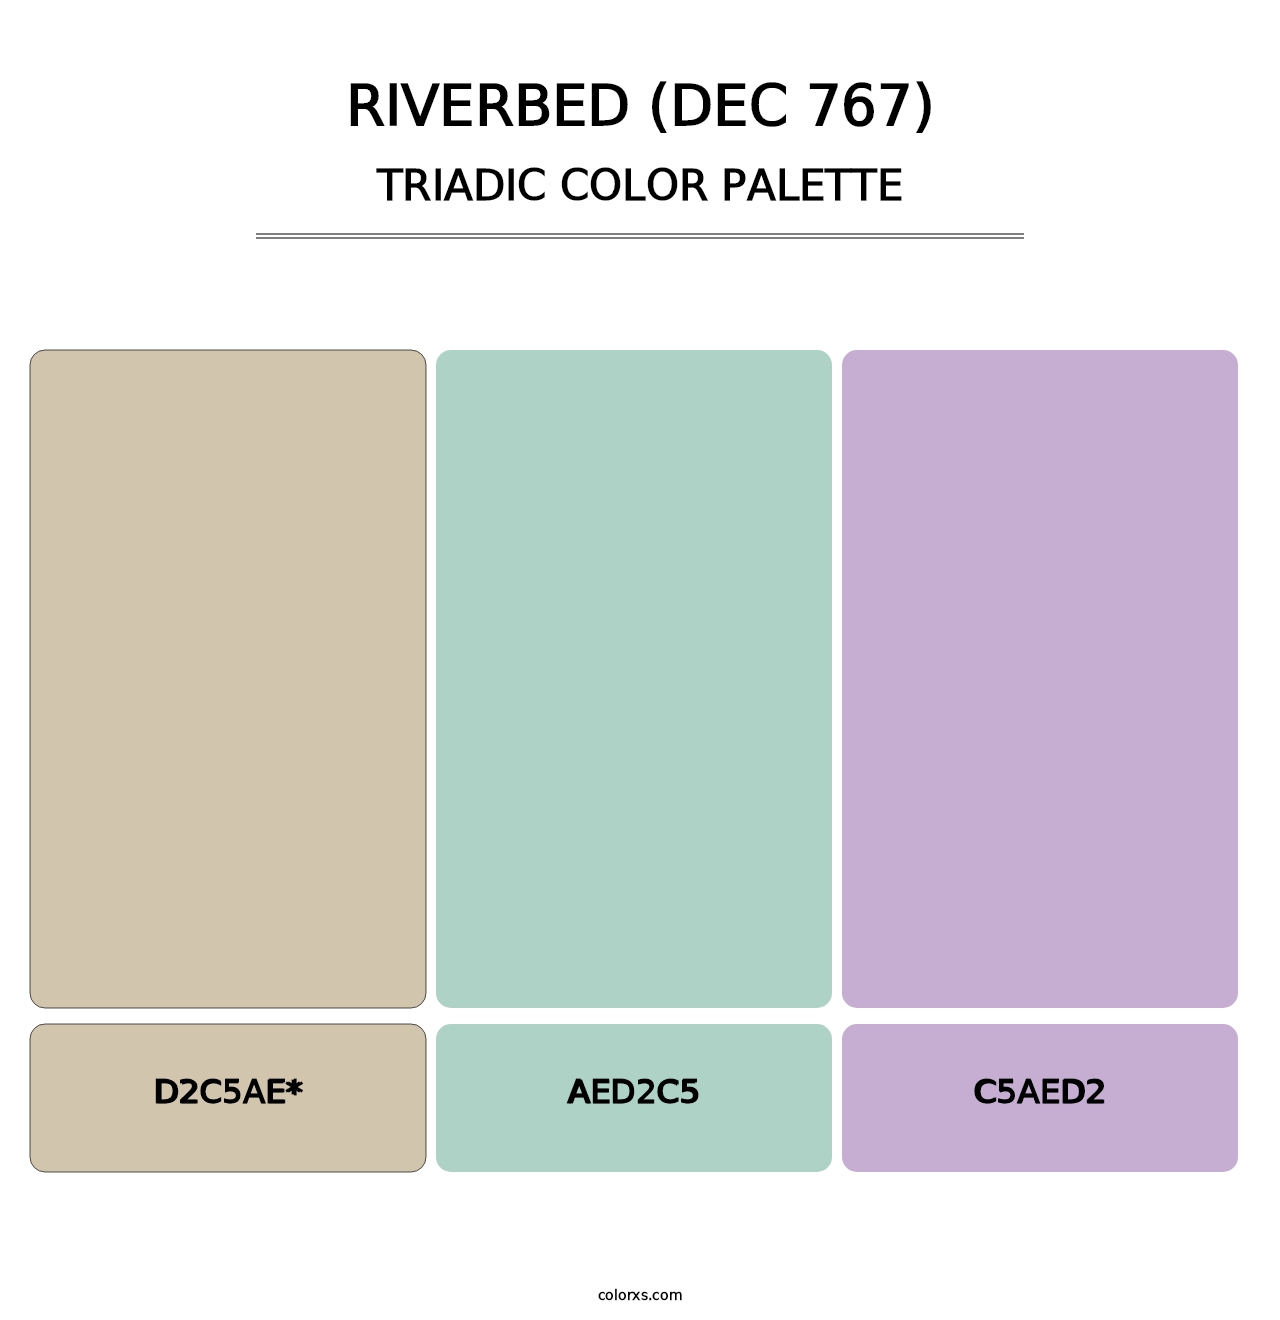 Riverbed (DEC 767) - Triadic Color Palette